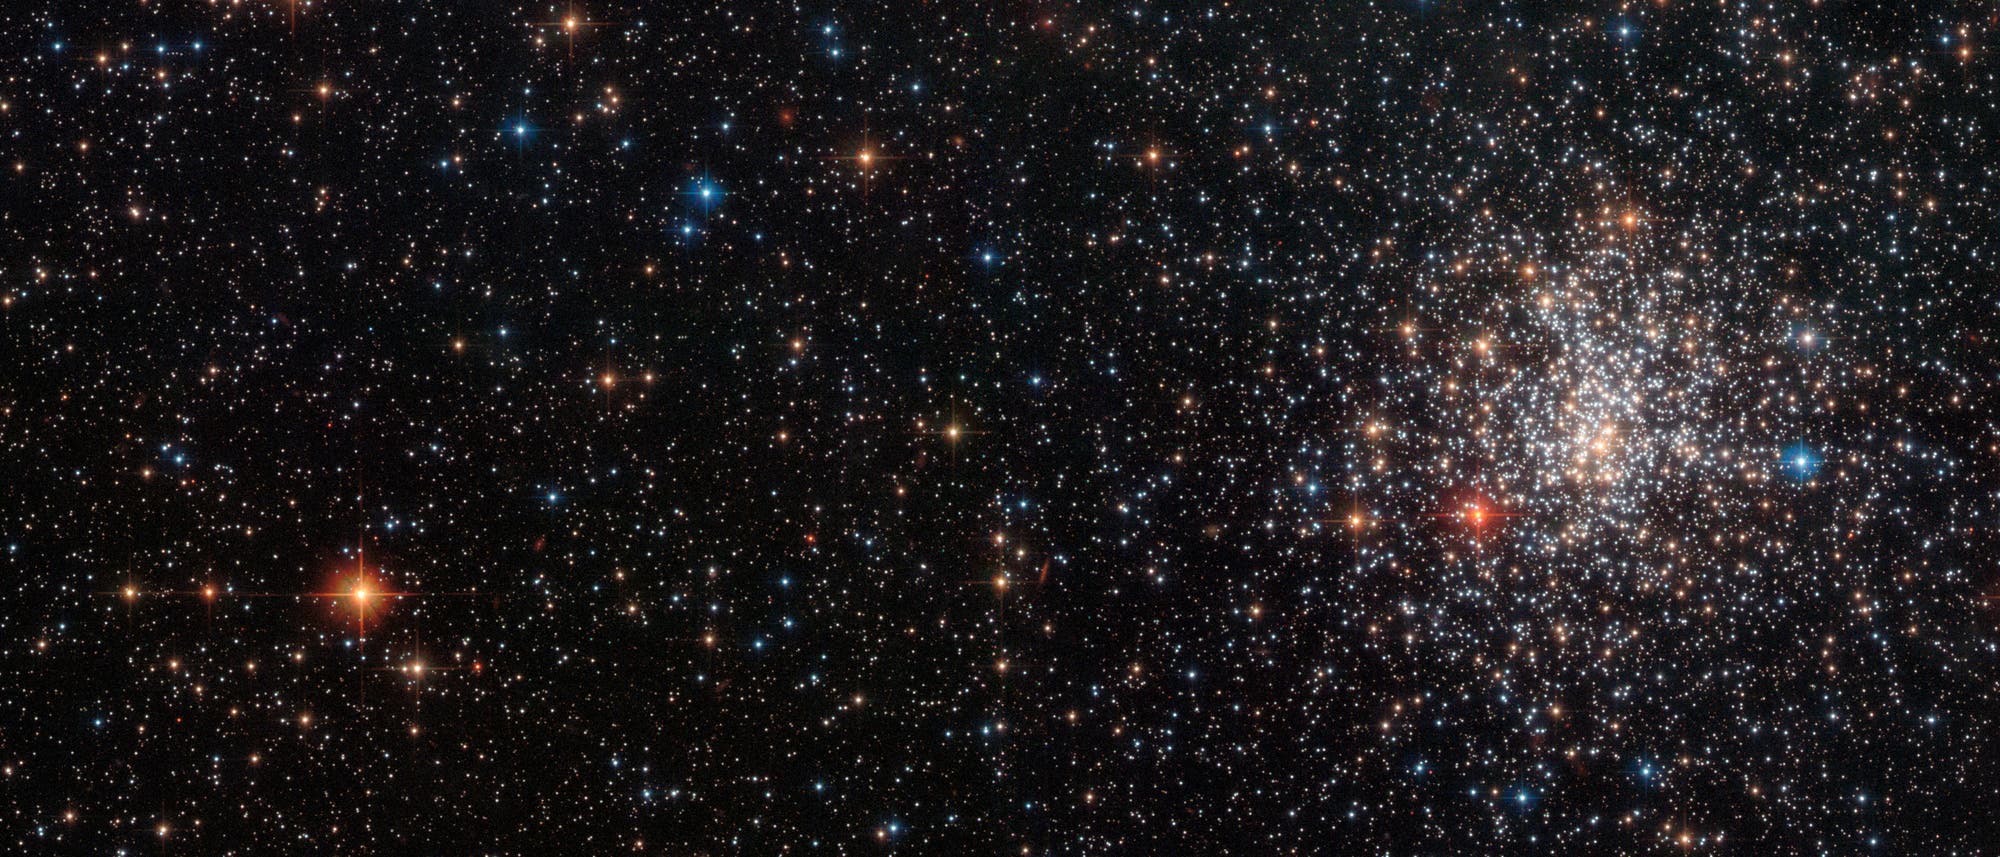 Der Kugelsternhaufen NGC 2108, in einer Aufnahme des Hubble Weltraumteleskops, mit einem auffälligen, tiefrot leuchtenden Stern links unten im Kugelsternhaufen. Dabei handelt es sich um einen Kohlenstoffstern.